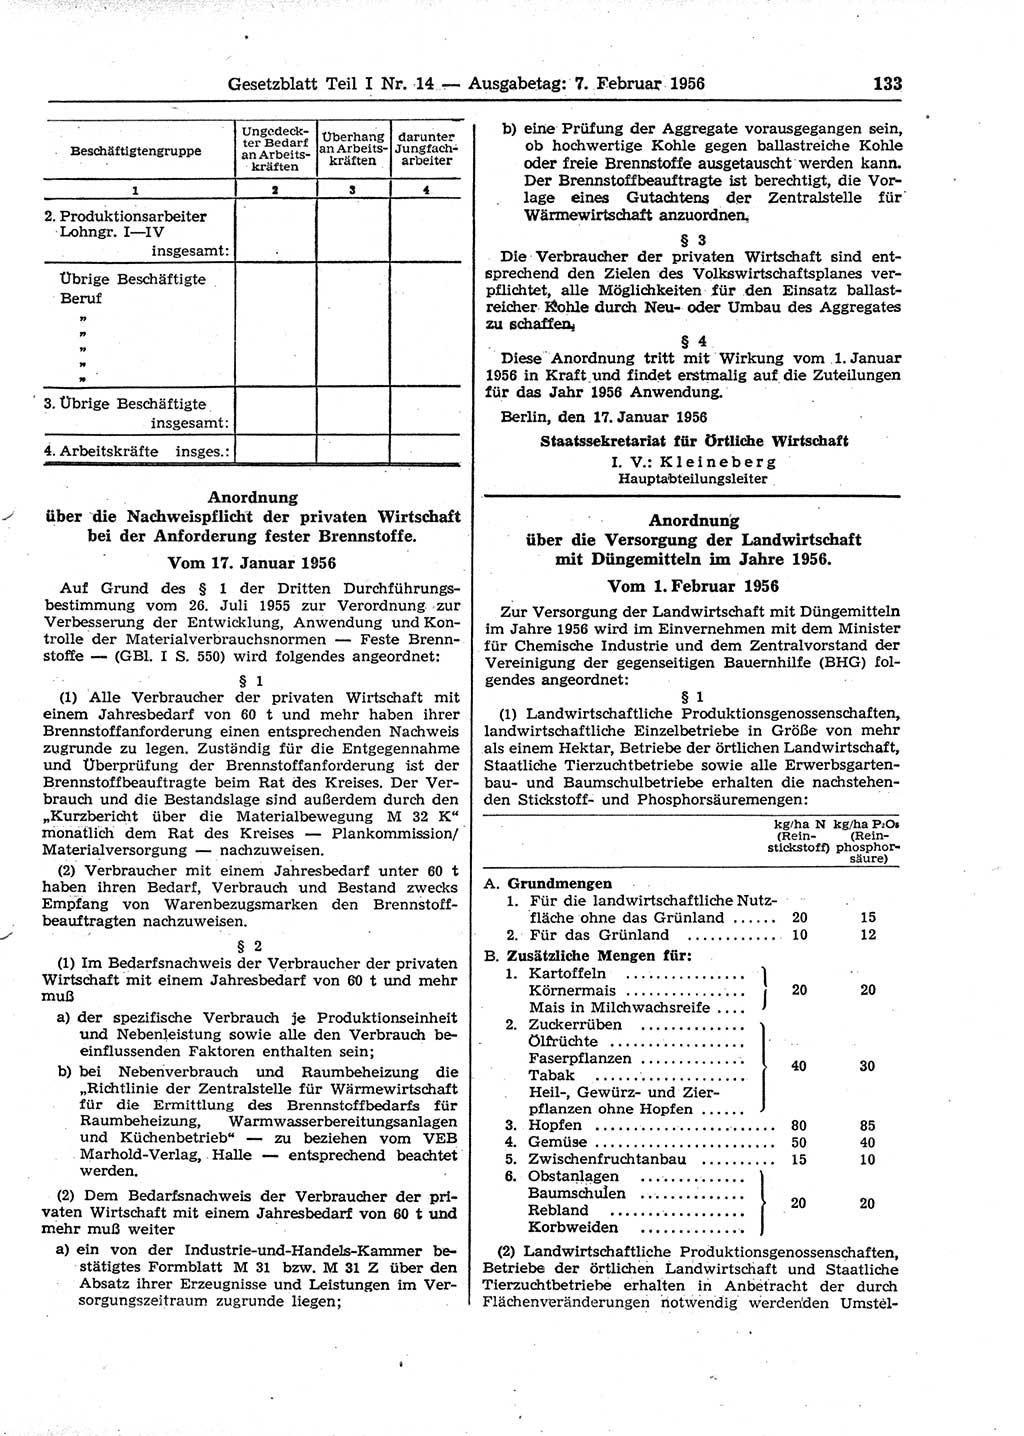 Gesetzblatt (GBl.) der Deutschen Demokratischen Republik (DDR) Teil Ⅰ 1956, Seite 133 (GBl. DDR Ⅰ 1956, S. 133)